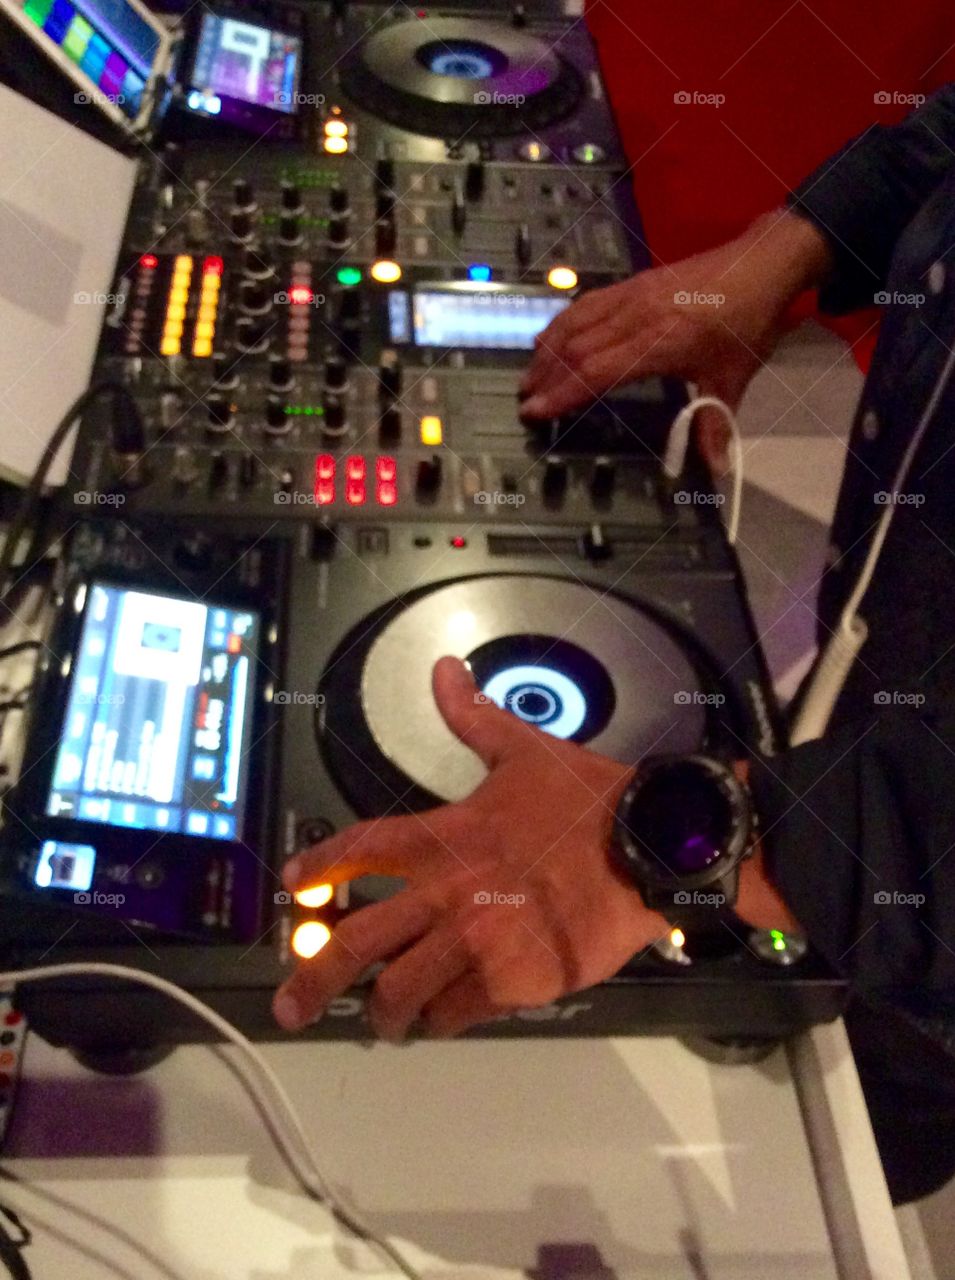 DJ in action in Barcelona 